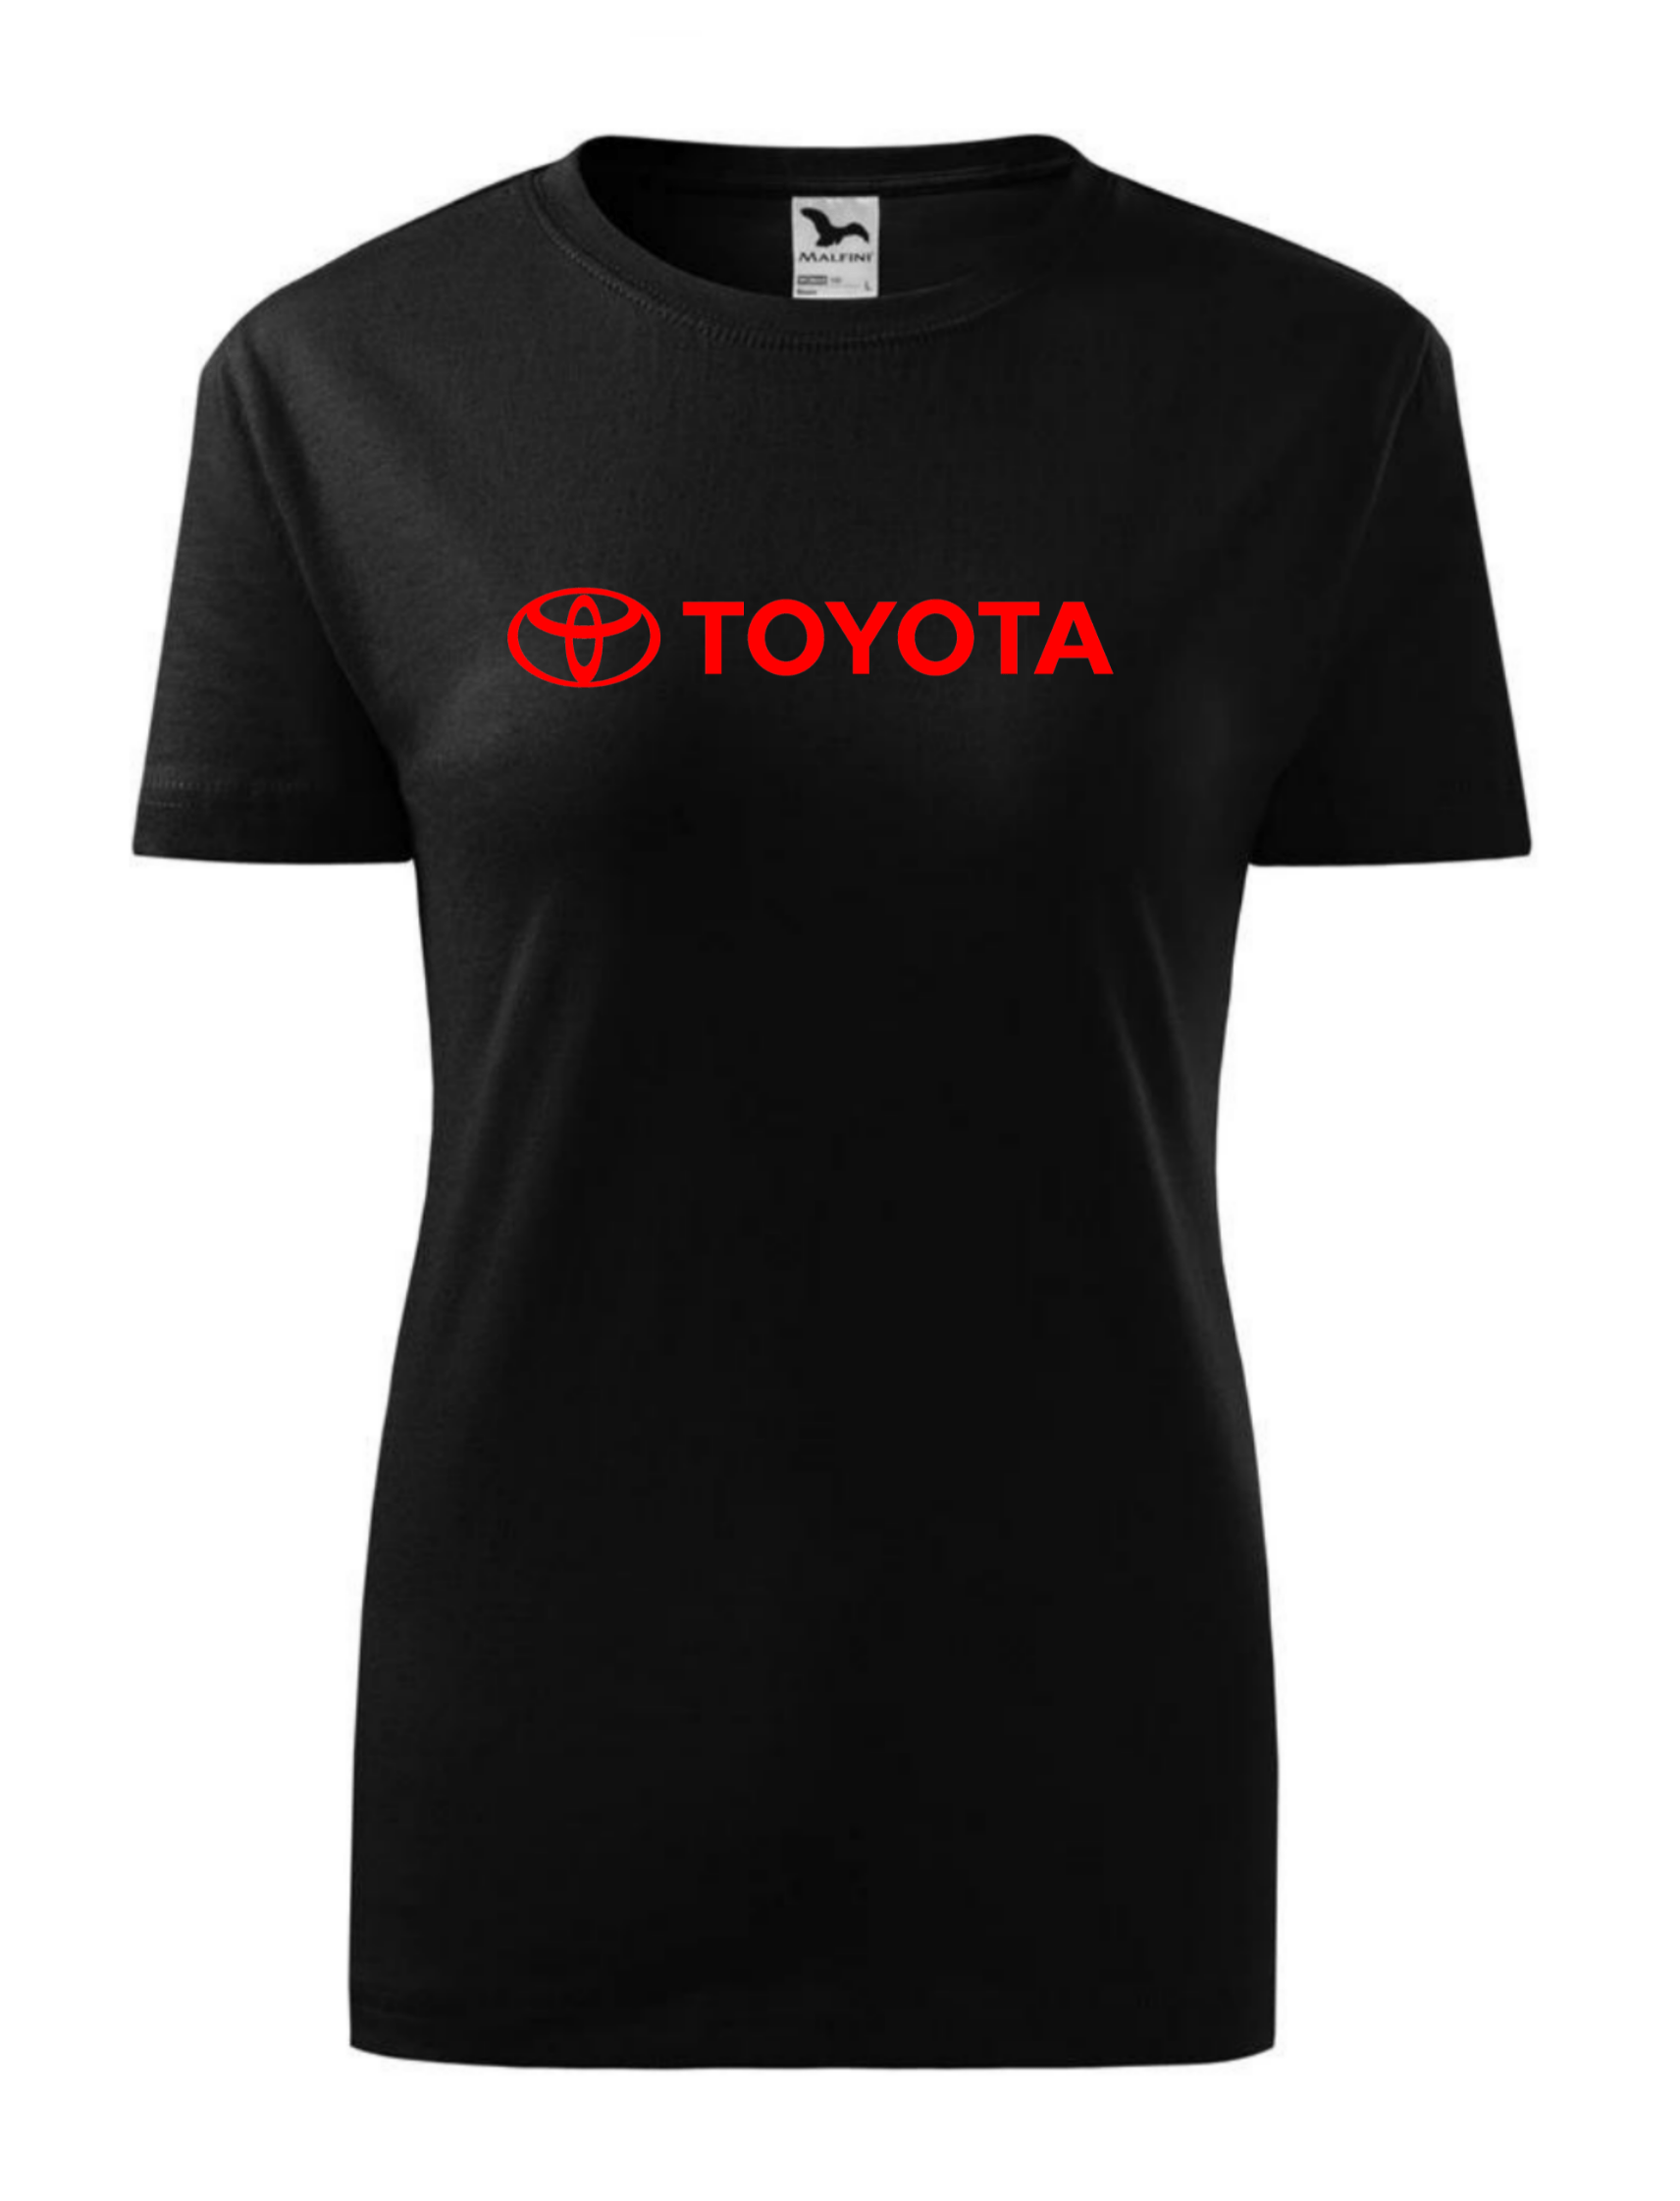 Dámské tričko s potiskem značky Toyota